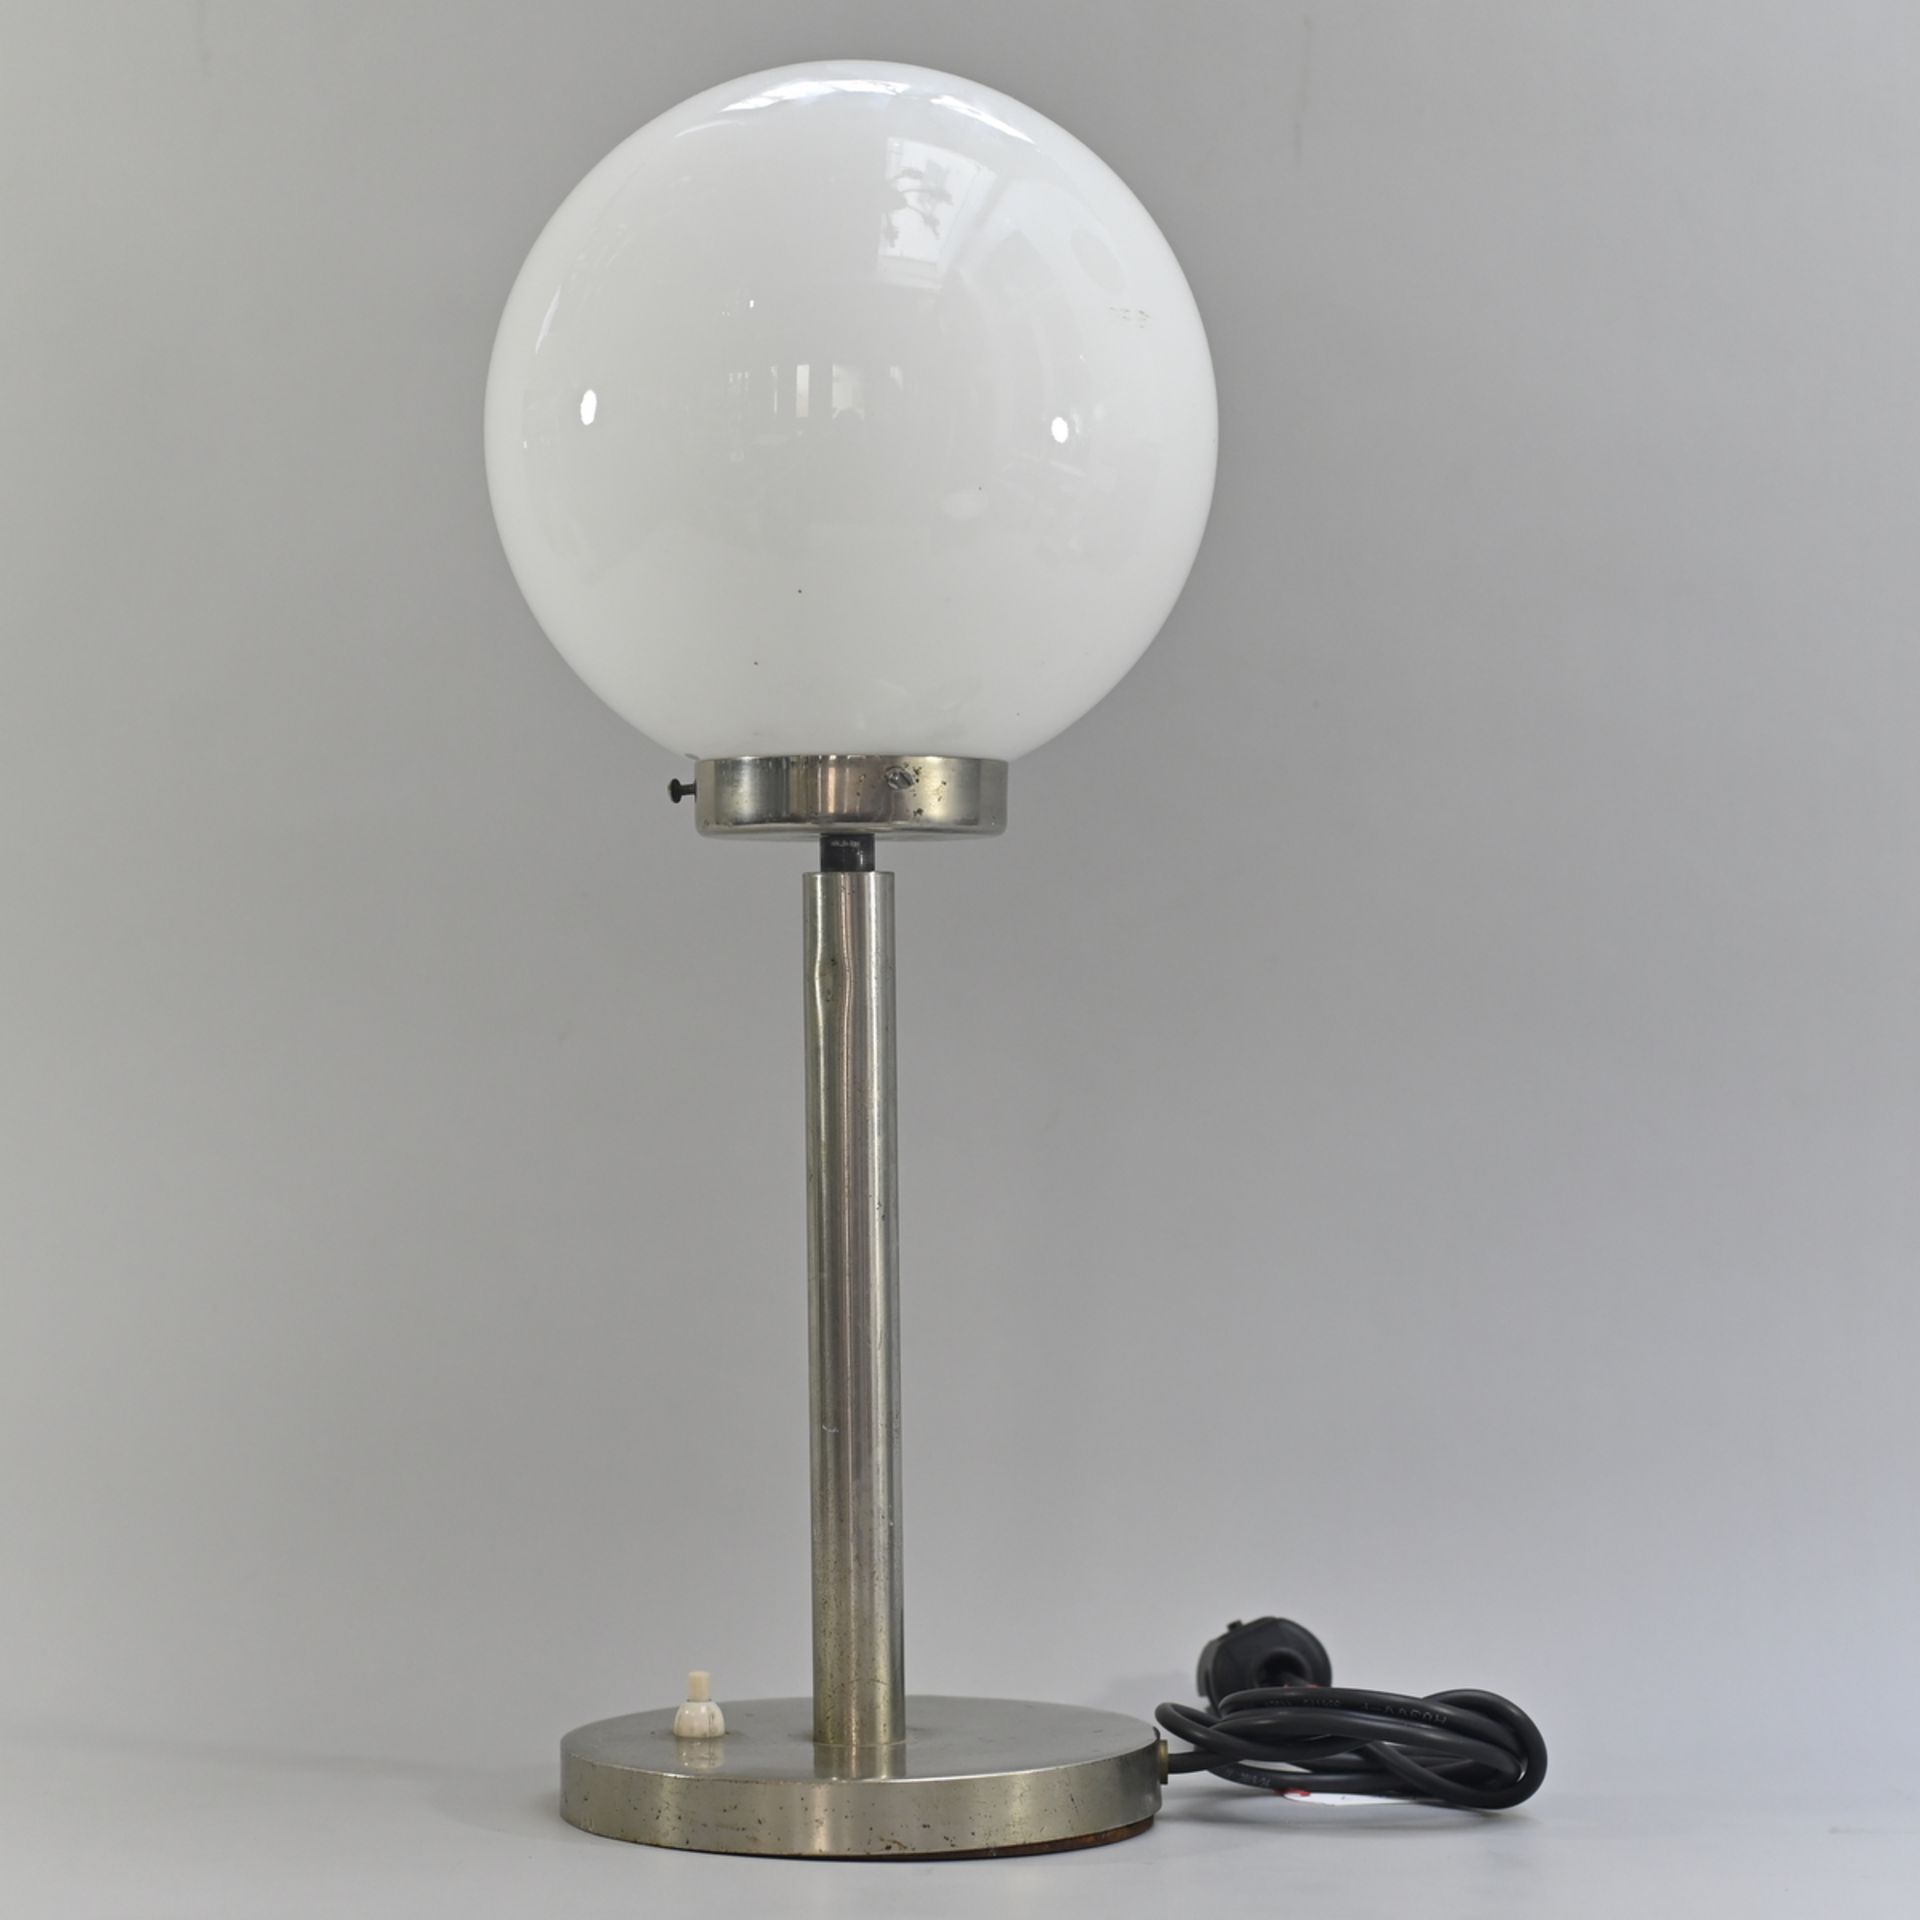 Bauhaus Stabtischlampe mit weißem Kugelschirm, Stab auf rundem Stand, vernickelt, mit minimalen